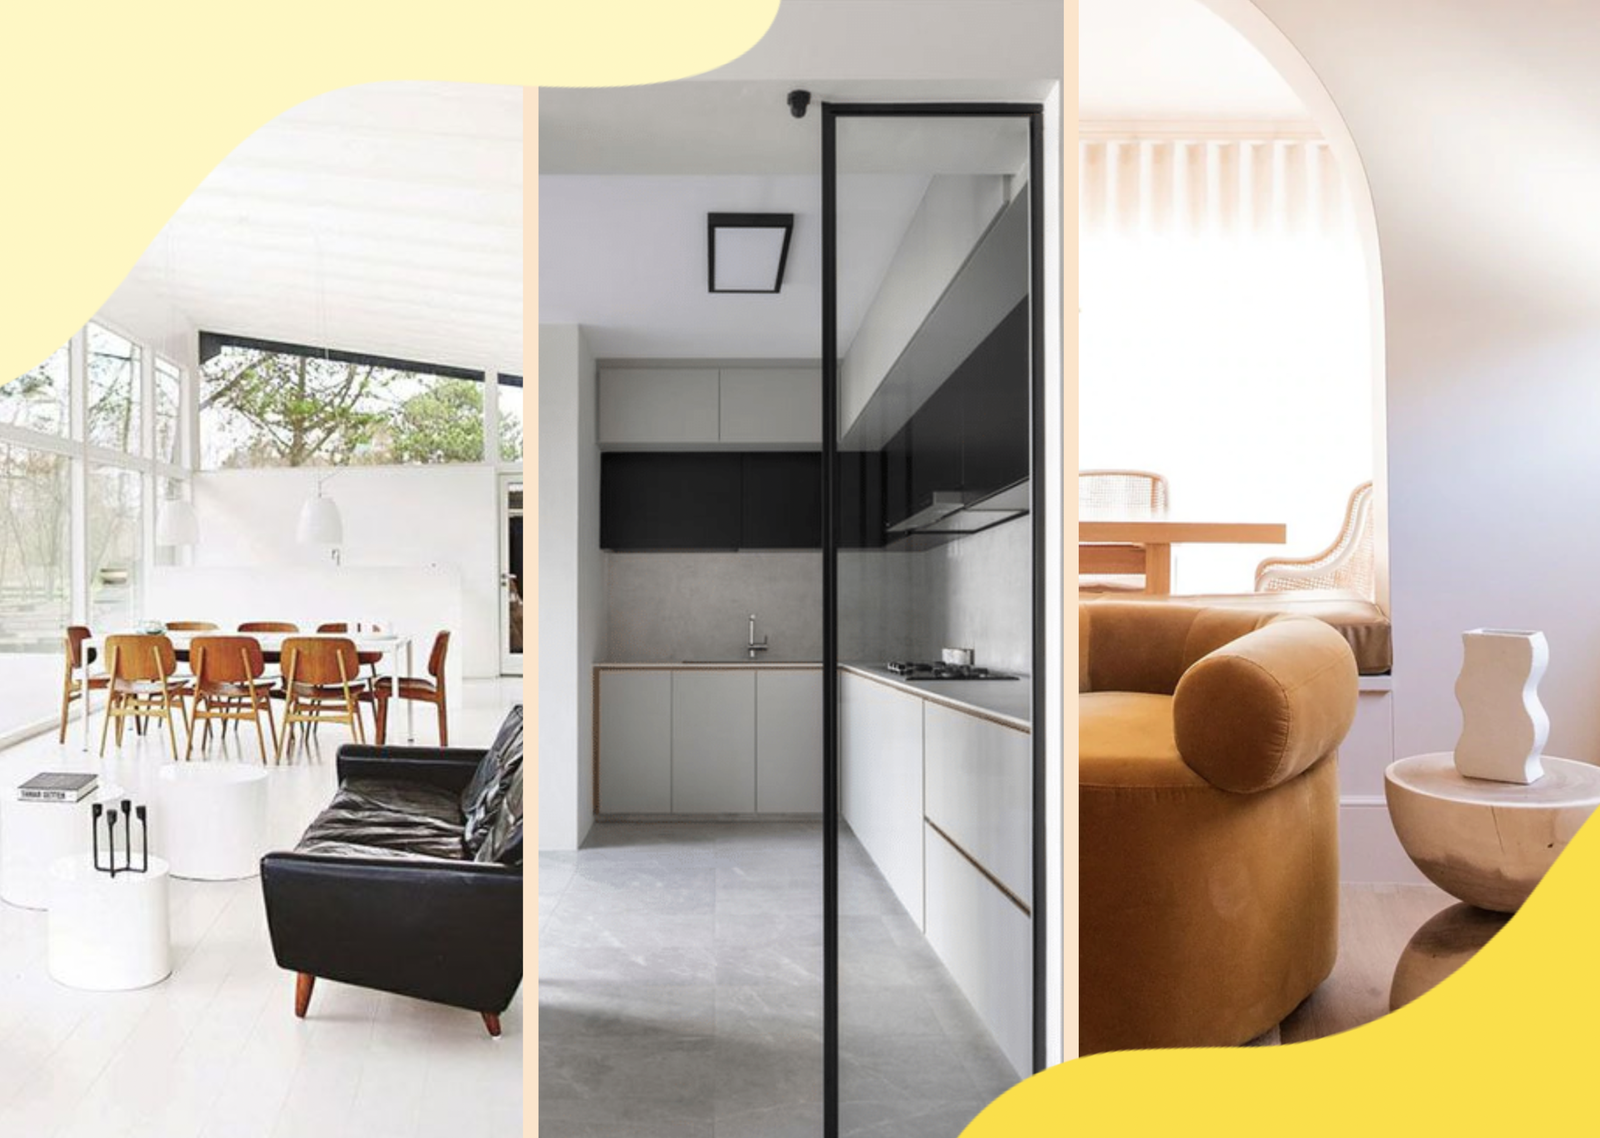 Contemporary vs. modern vs. minimalist interior design